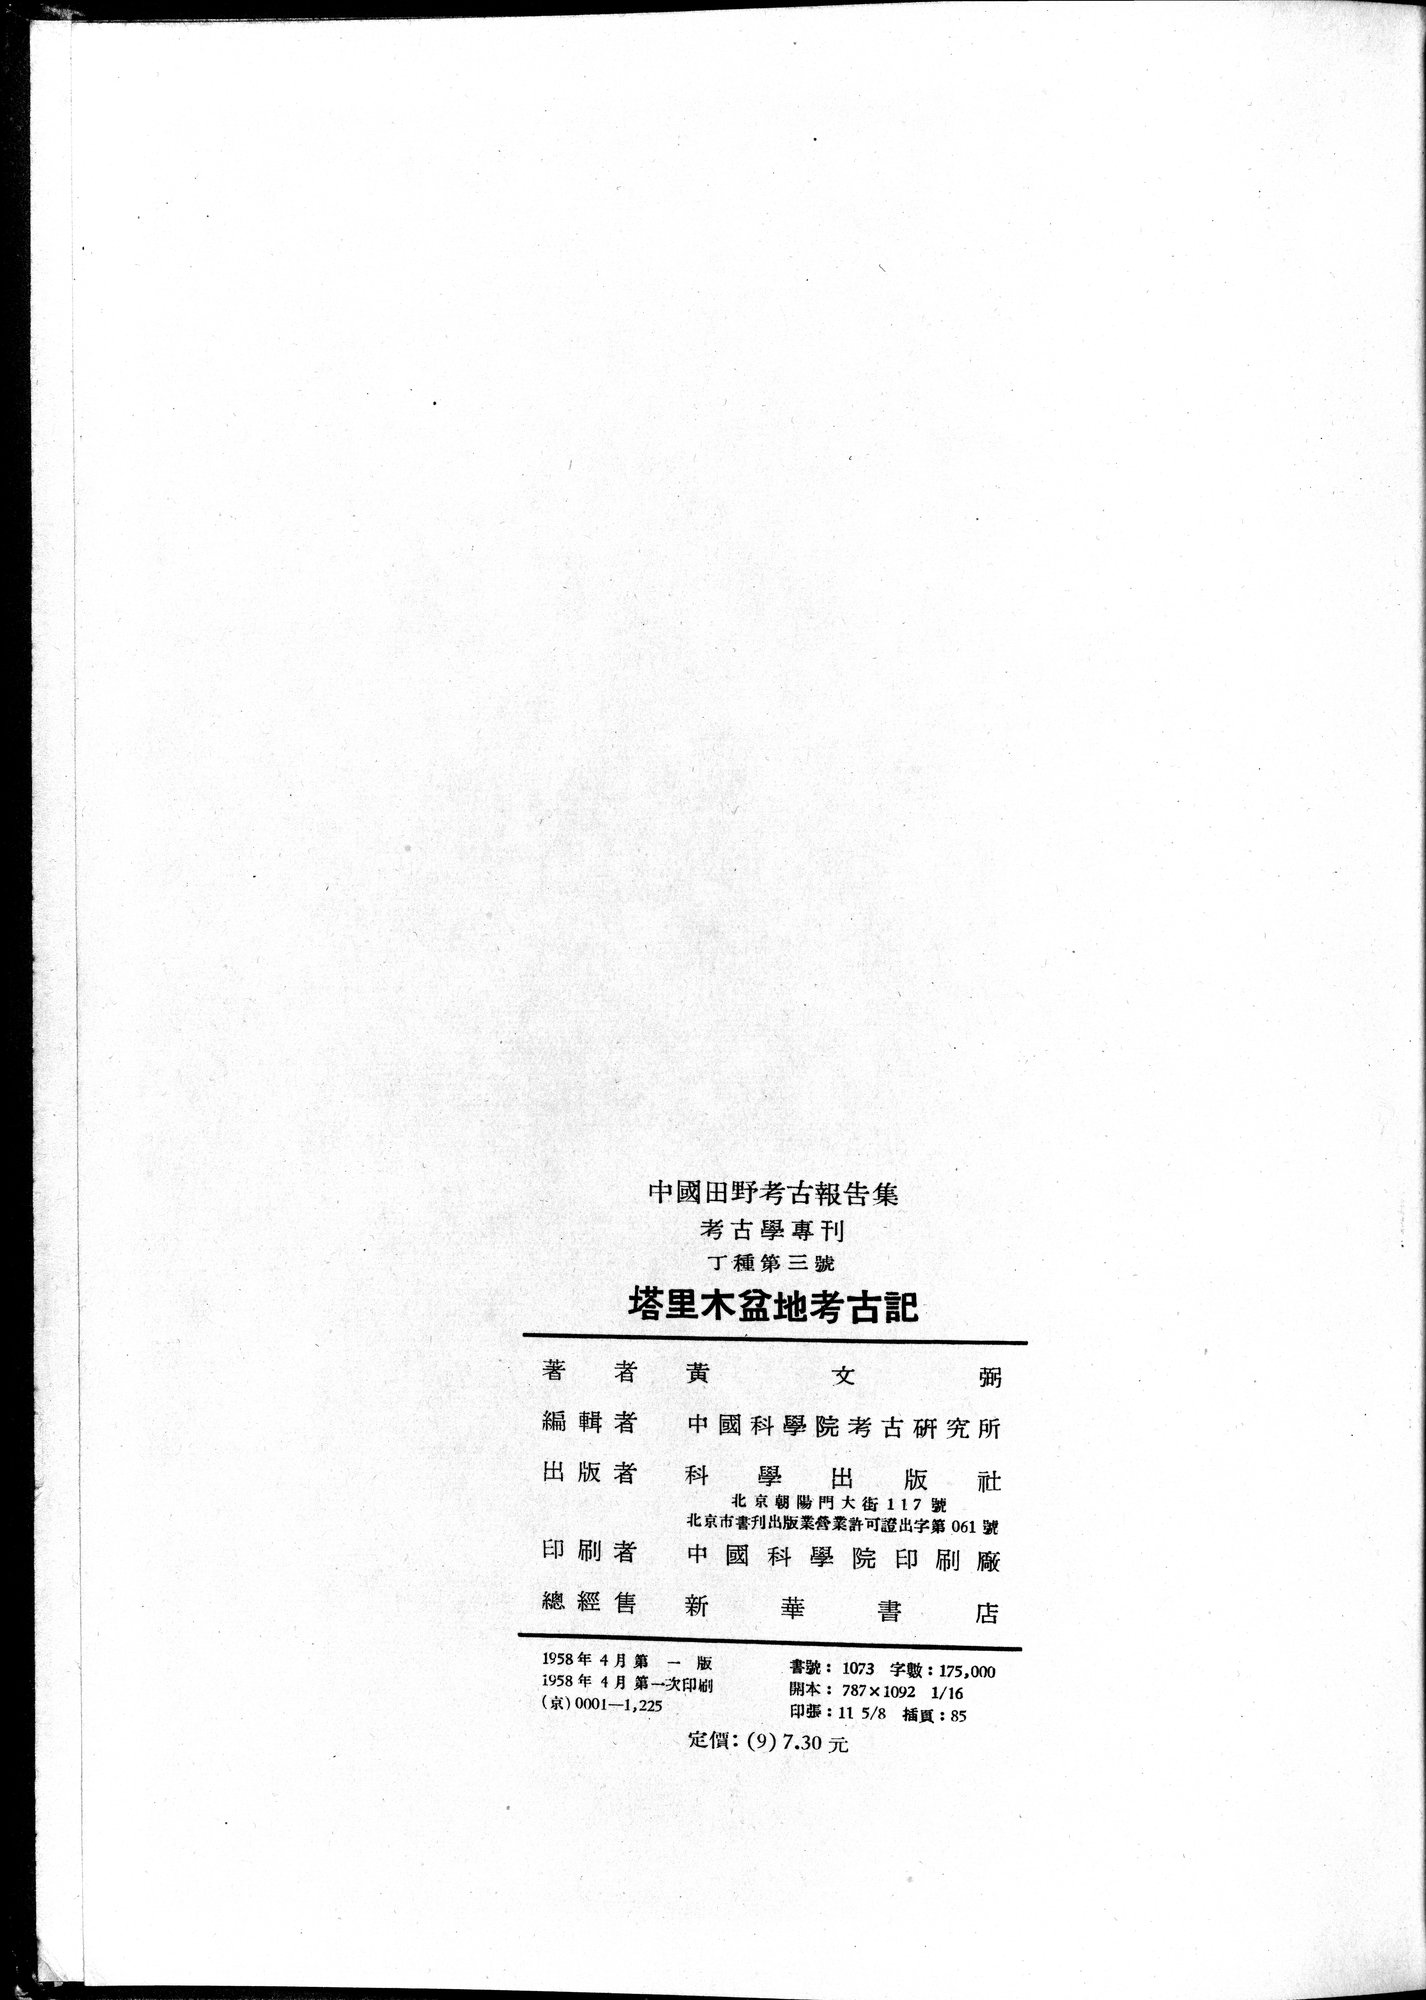 塔里木盆地考古記 : vol.1 / Page 367 (Grayscale High Resolution Image)